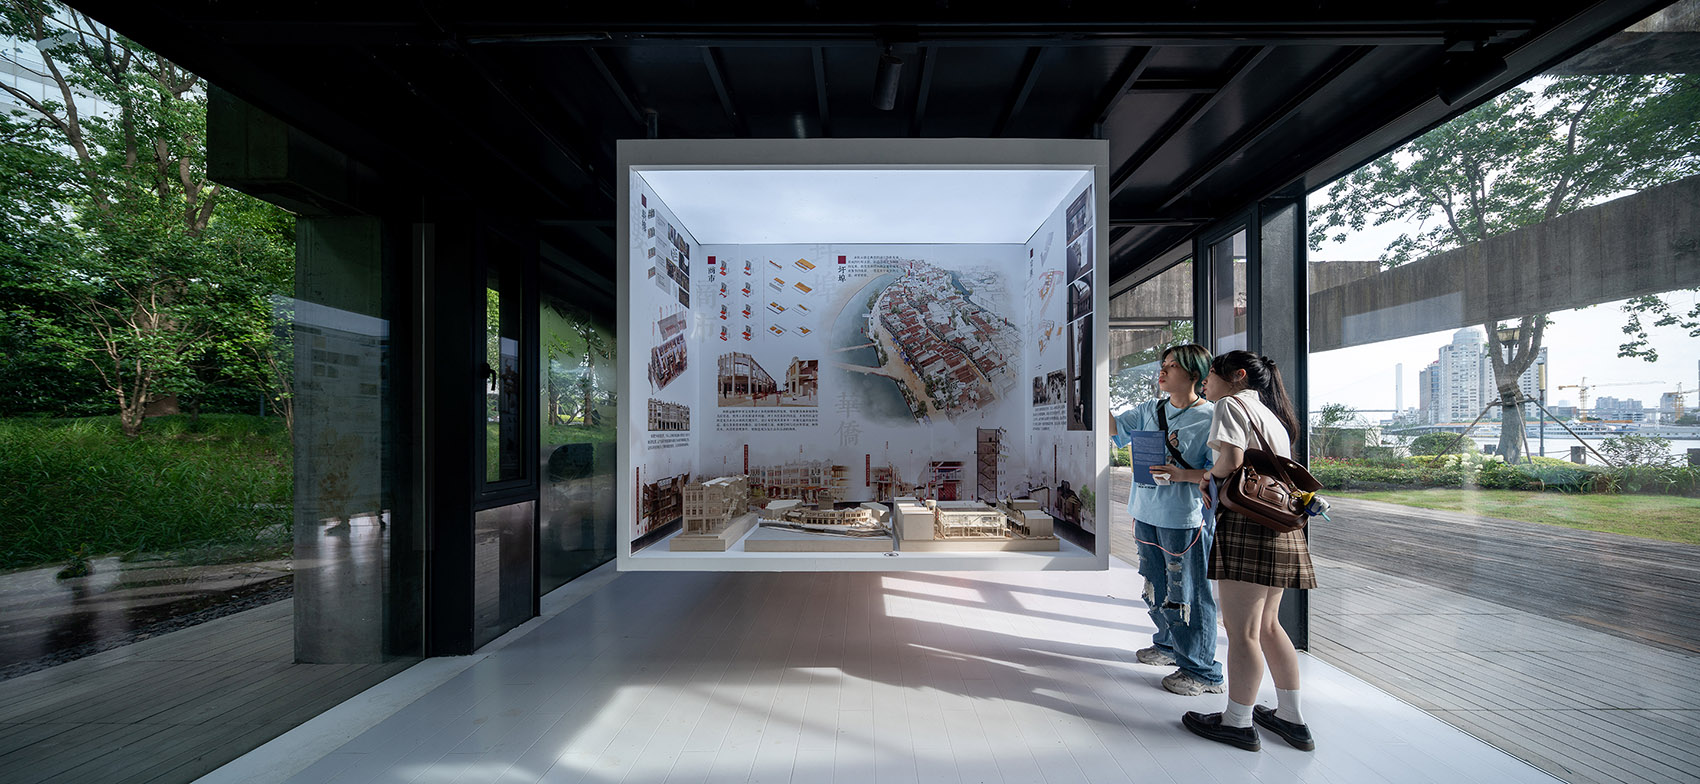 浮盒 &  同济大学建筑系2021毕设艺仓展设计/与真实的城市环境建立更紧密的联系-38